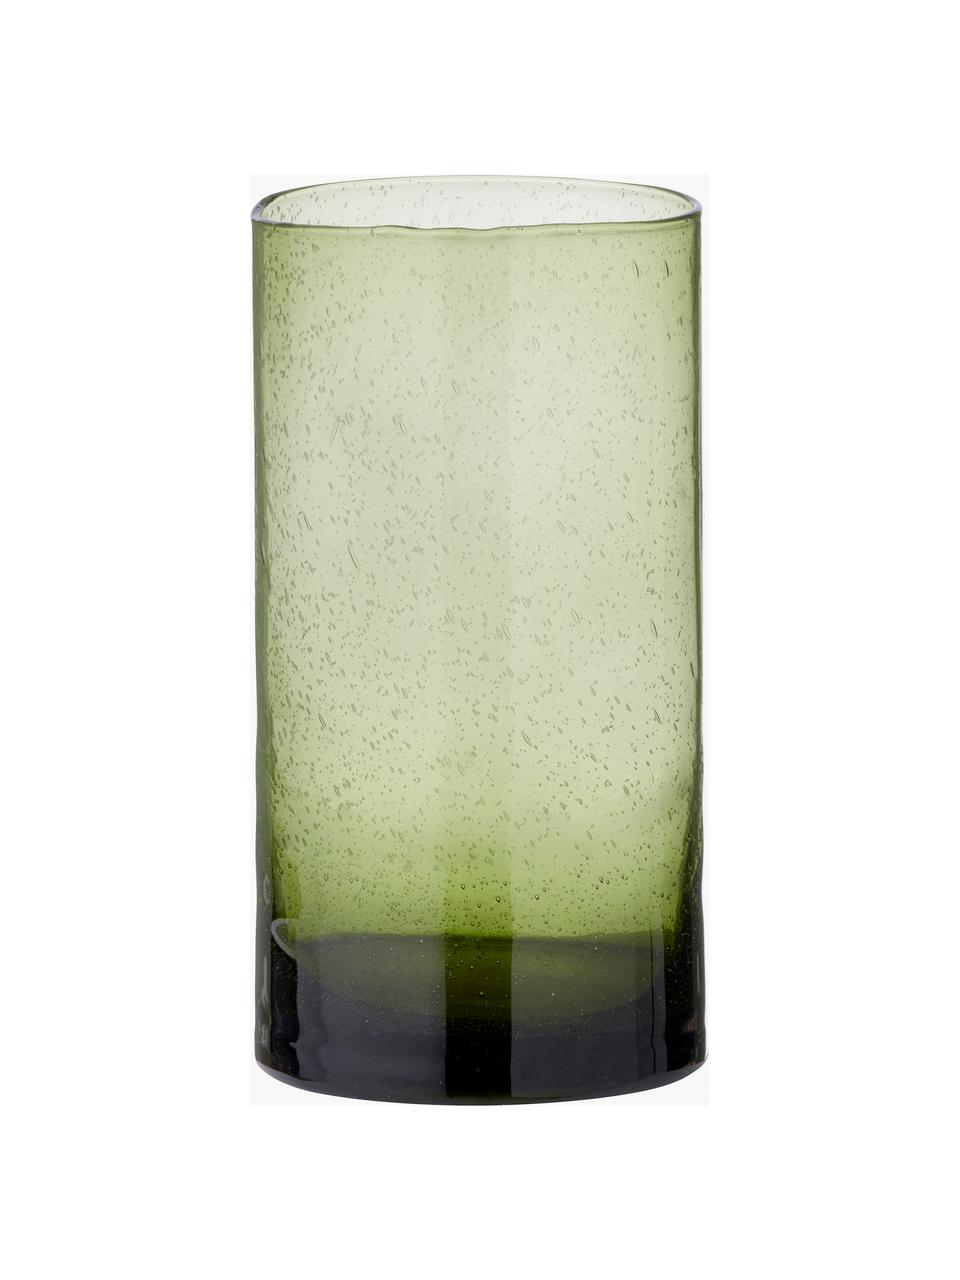 Skleněná váza Salon, V 21 cm, Sklo, Odstíny zelené, poloprůhledná, Ø 11 cm, V 21 cm